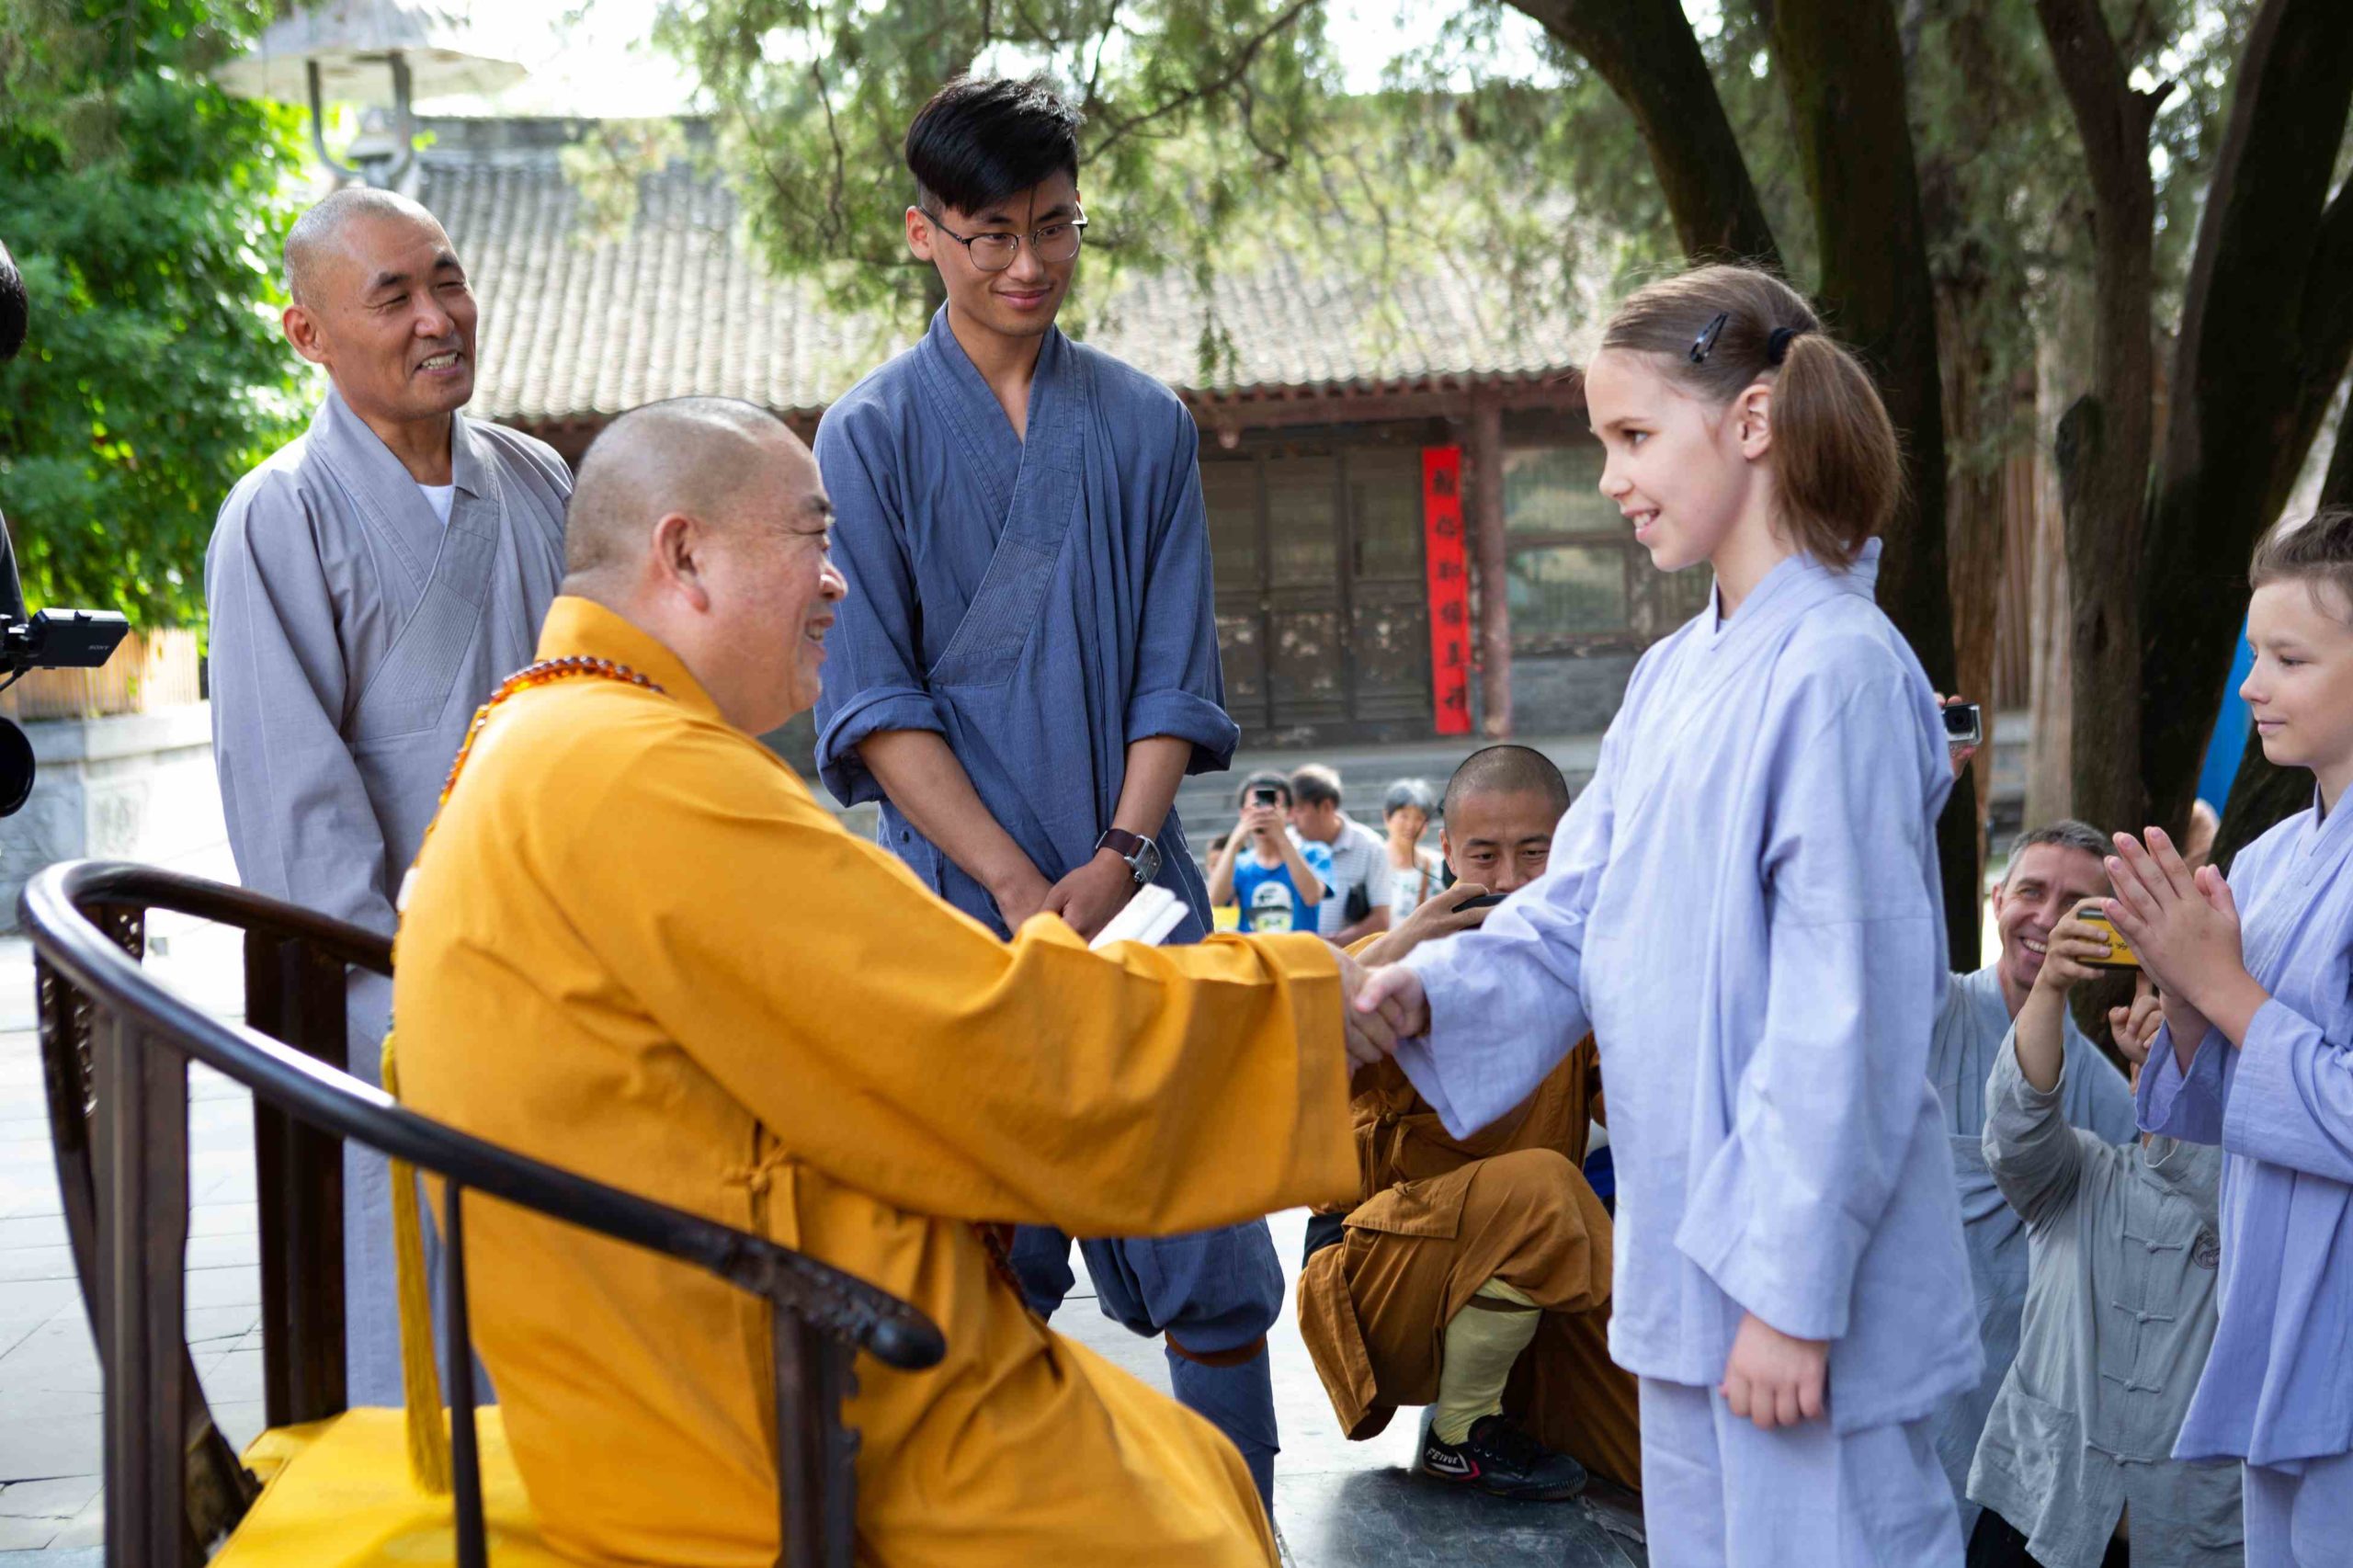 Встреча с настоятелем Шаолиня Ши Юньсинем 2019 год, монастырь Шаолинь